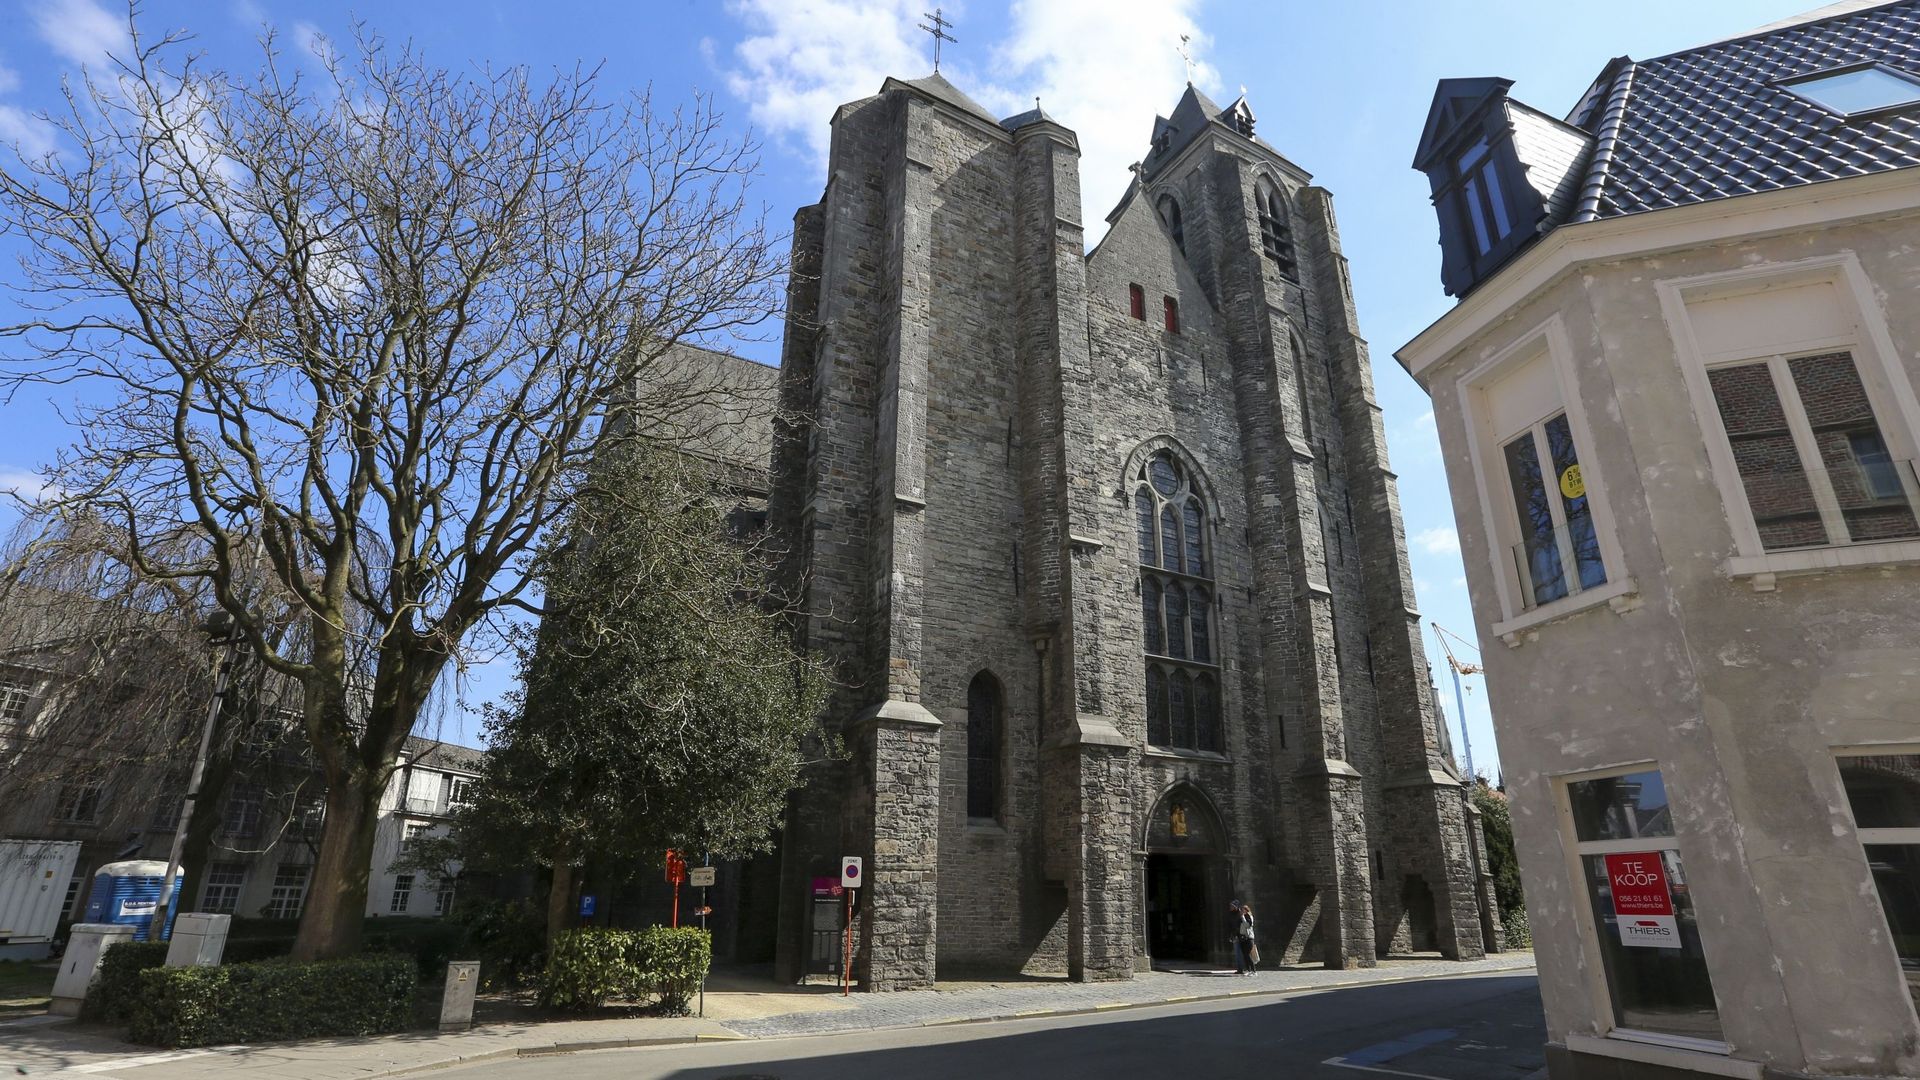 L’église Notre-Dame (Onze-Lieve-Vrouwekerk) de Courtrai, dans laquelle sera exposé le coffre d’Oxford.